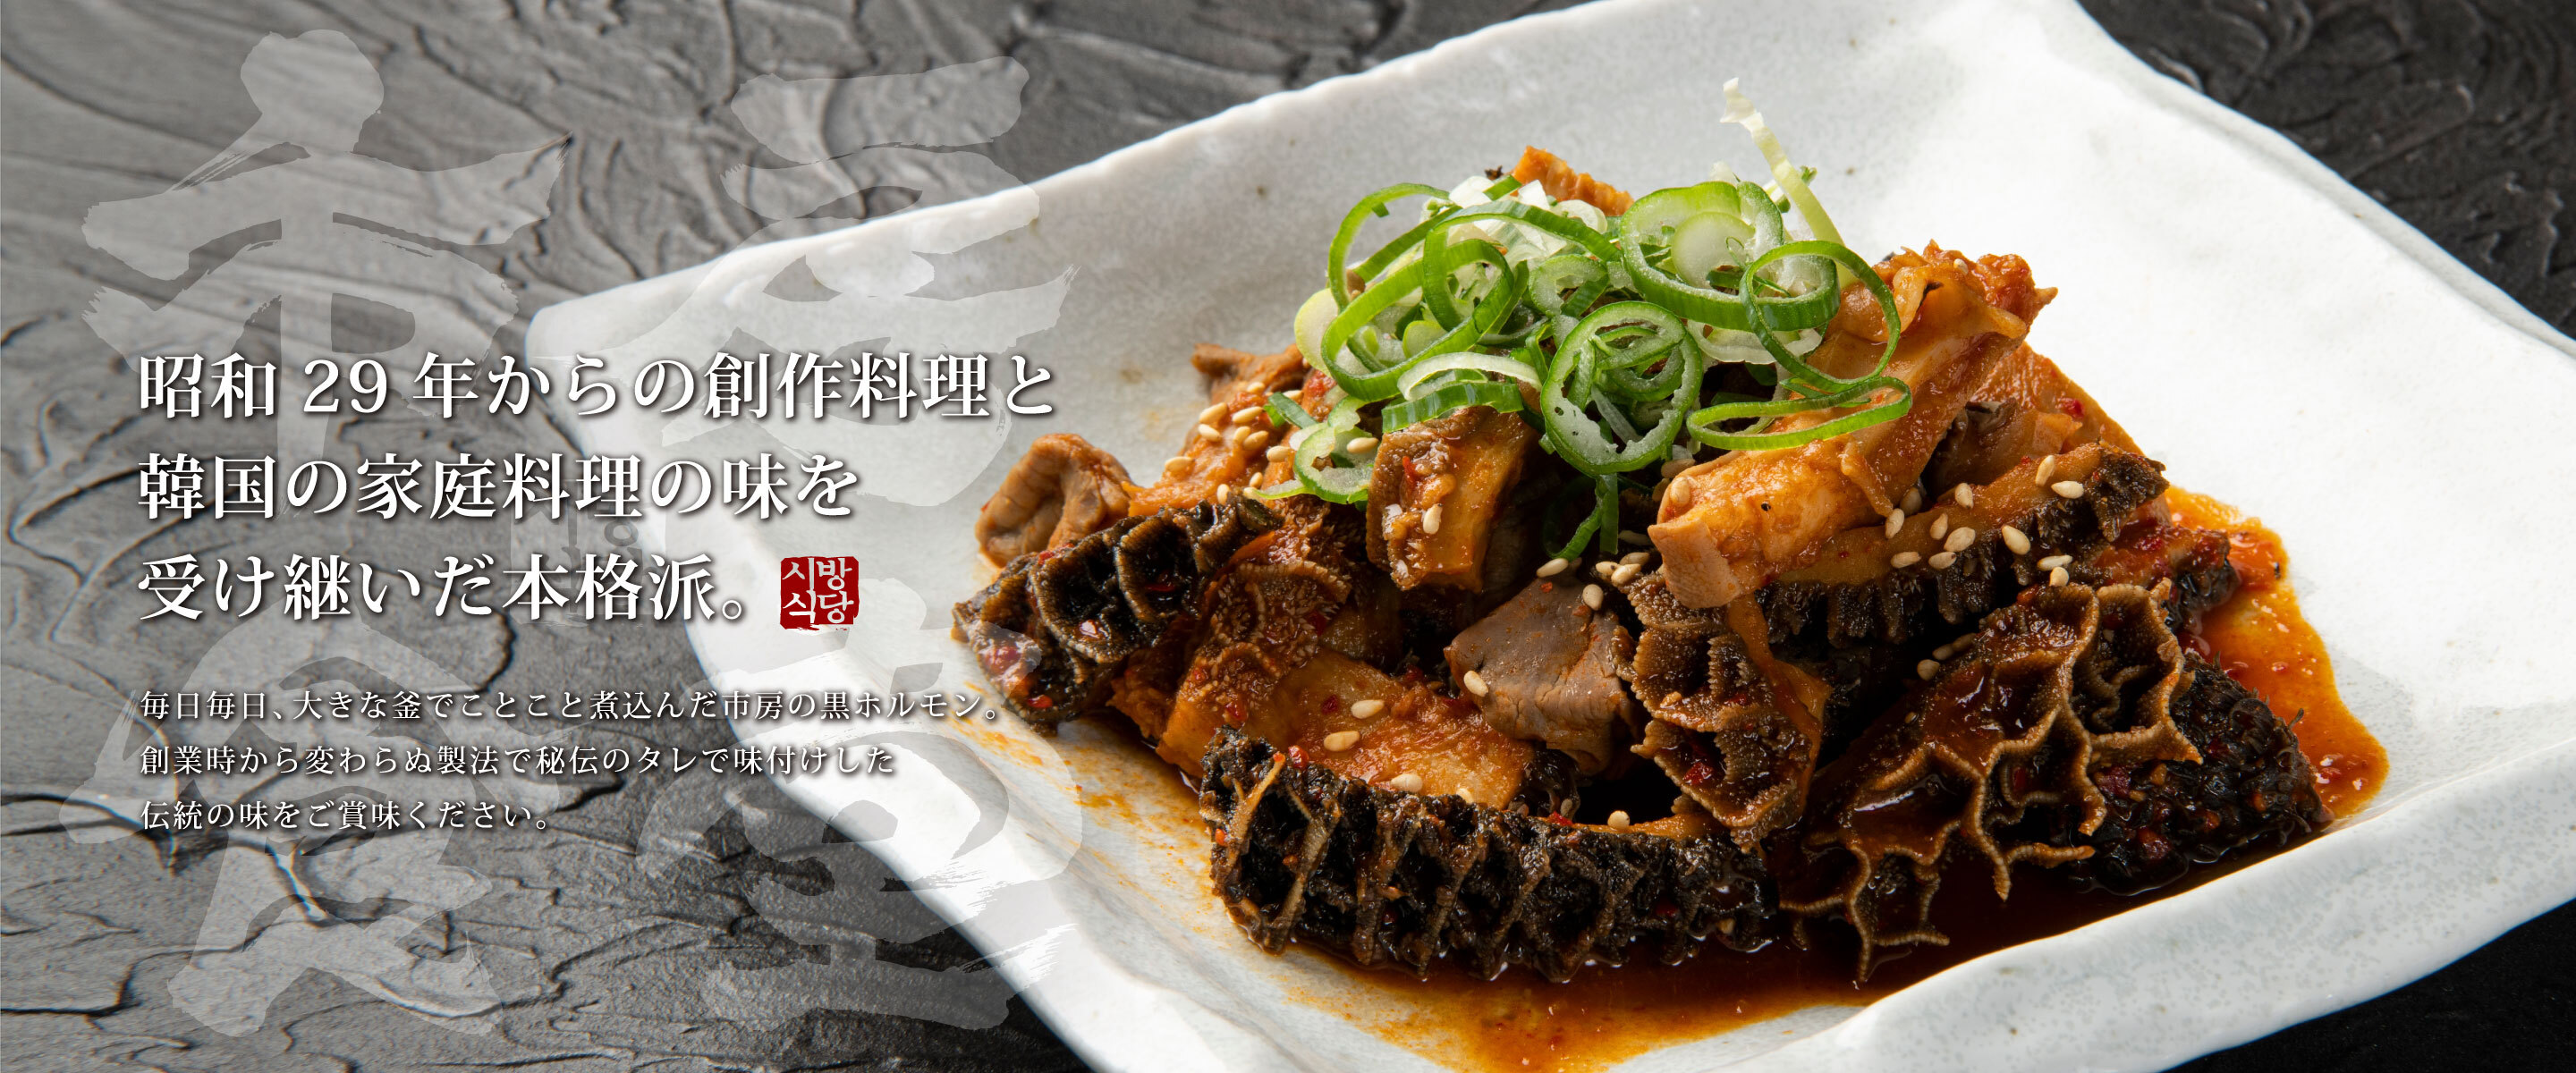 昭和29年からの創作料理と韓国の家庭料理の味を受け継いだ本格派。